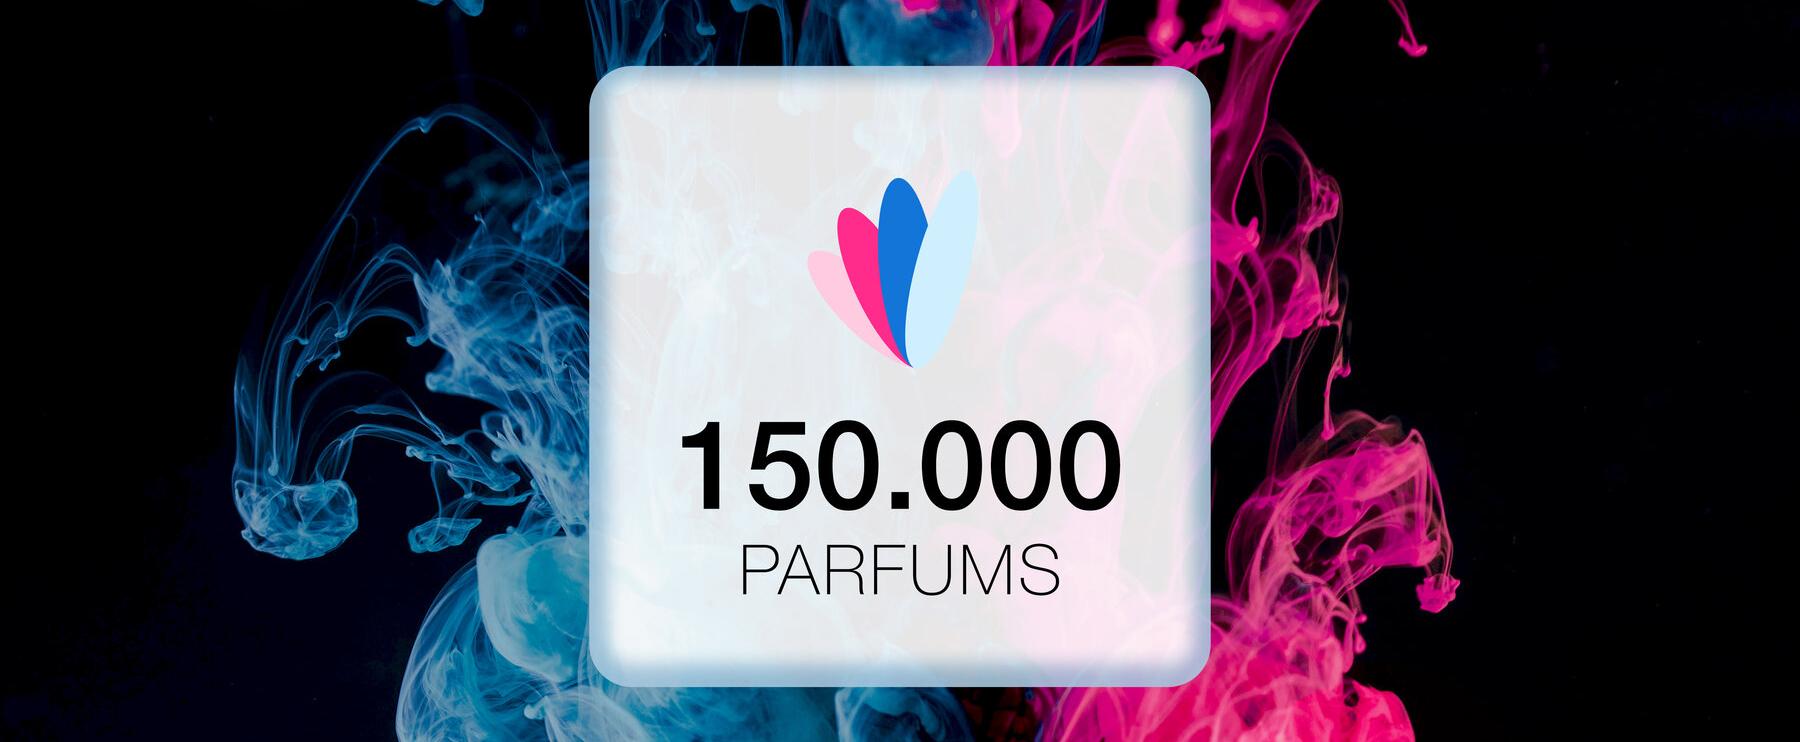 150.000 Parfums - Wir feiern einen neuen Meilenstein!